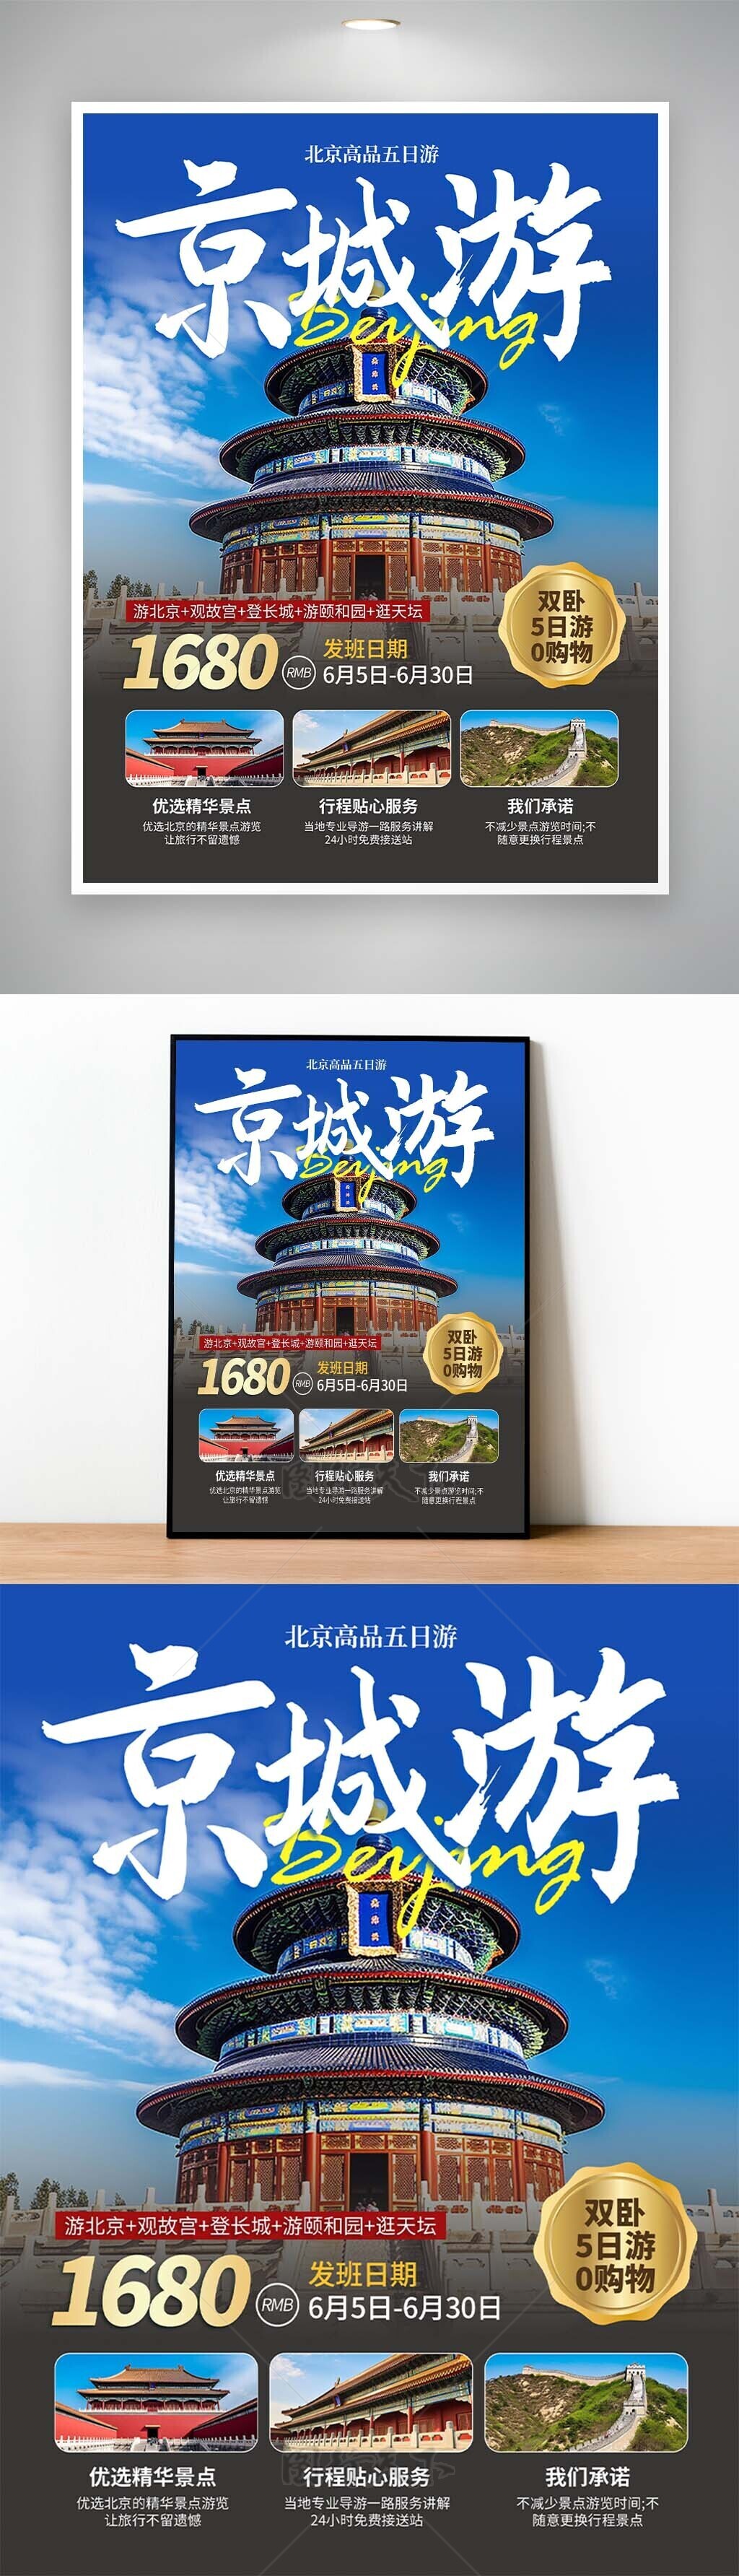 京城游天坛背景主题文旅海报设计